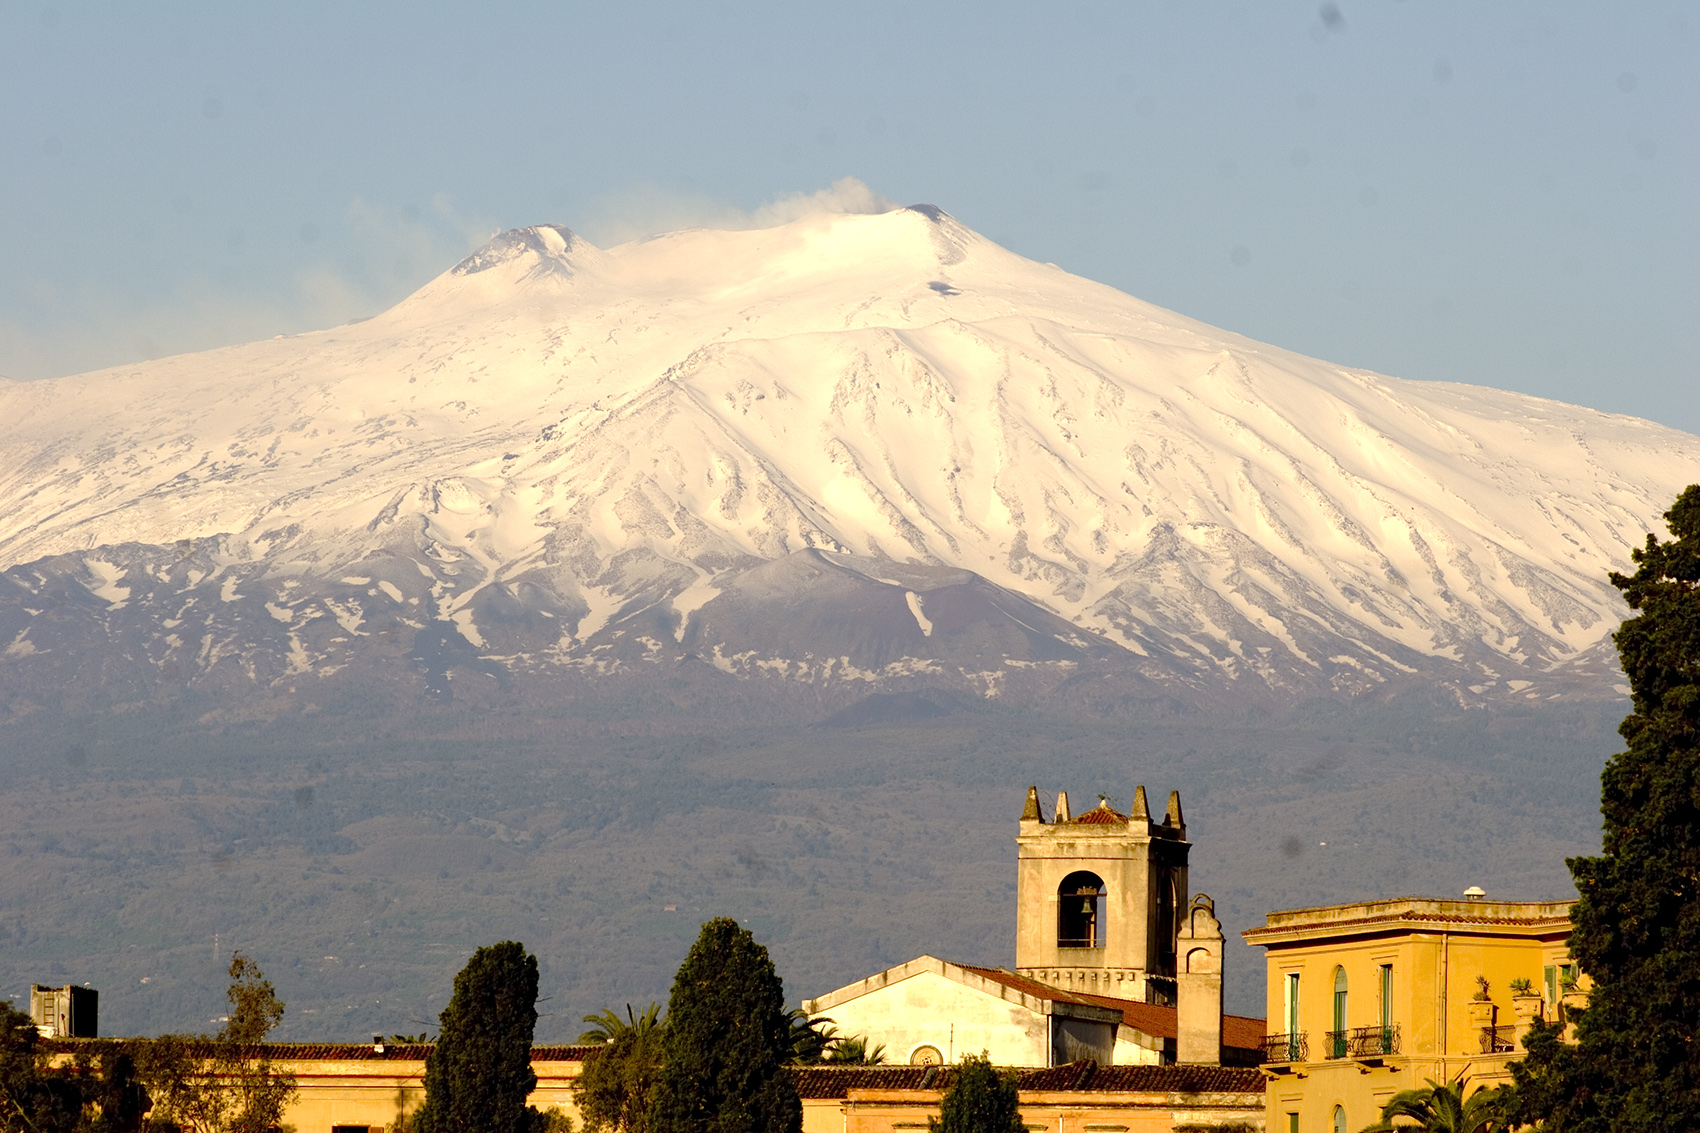 Mt. Etna, Sicily